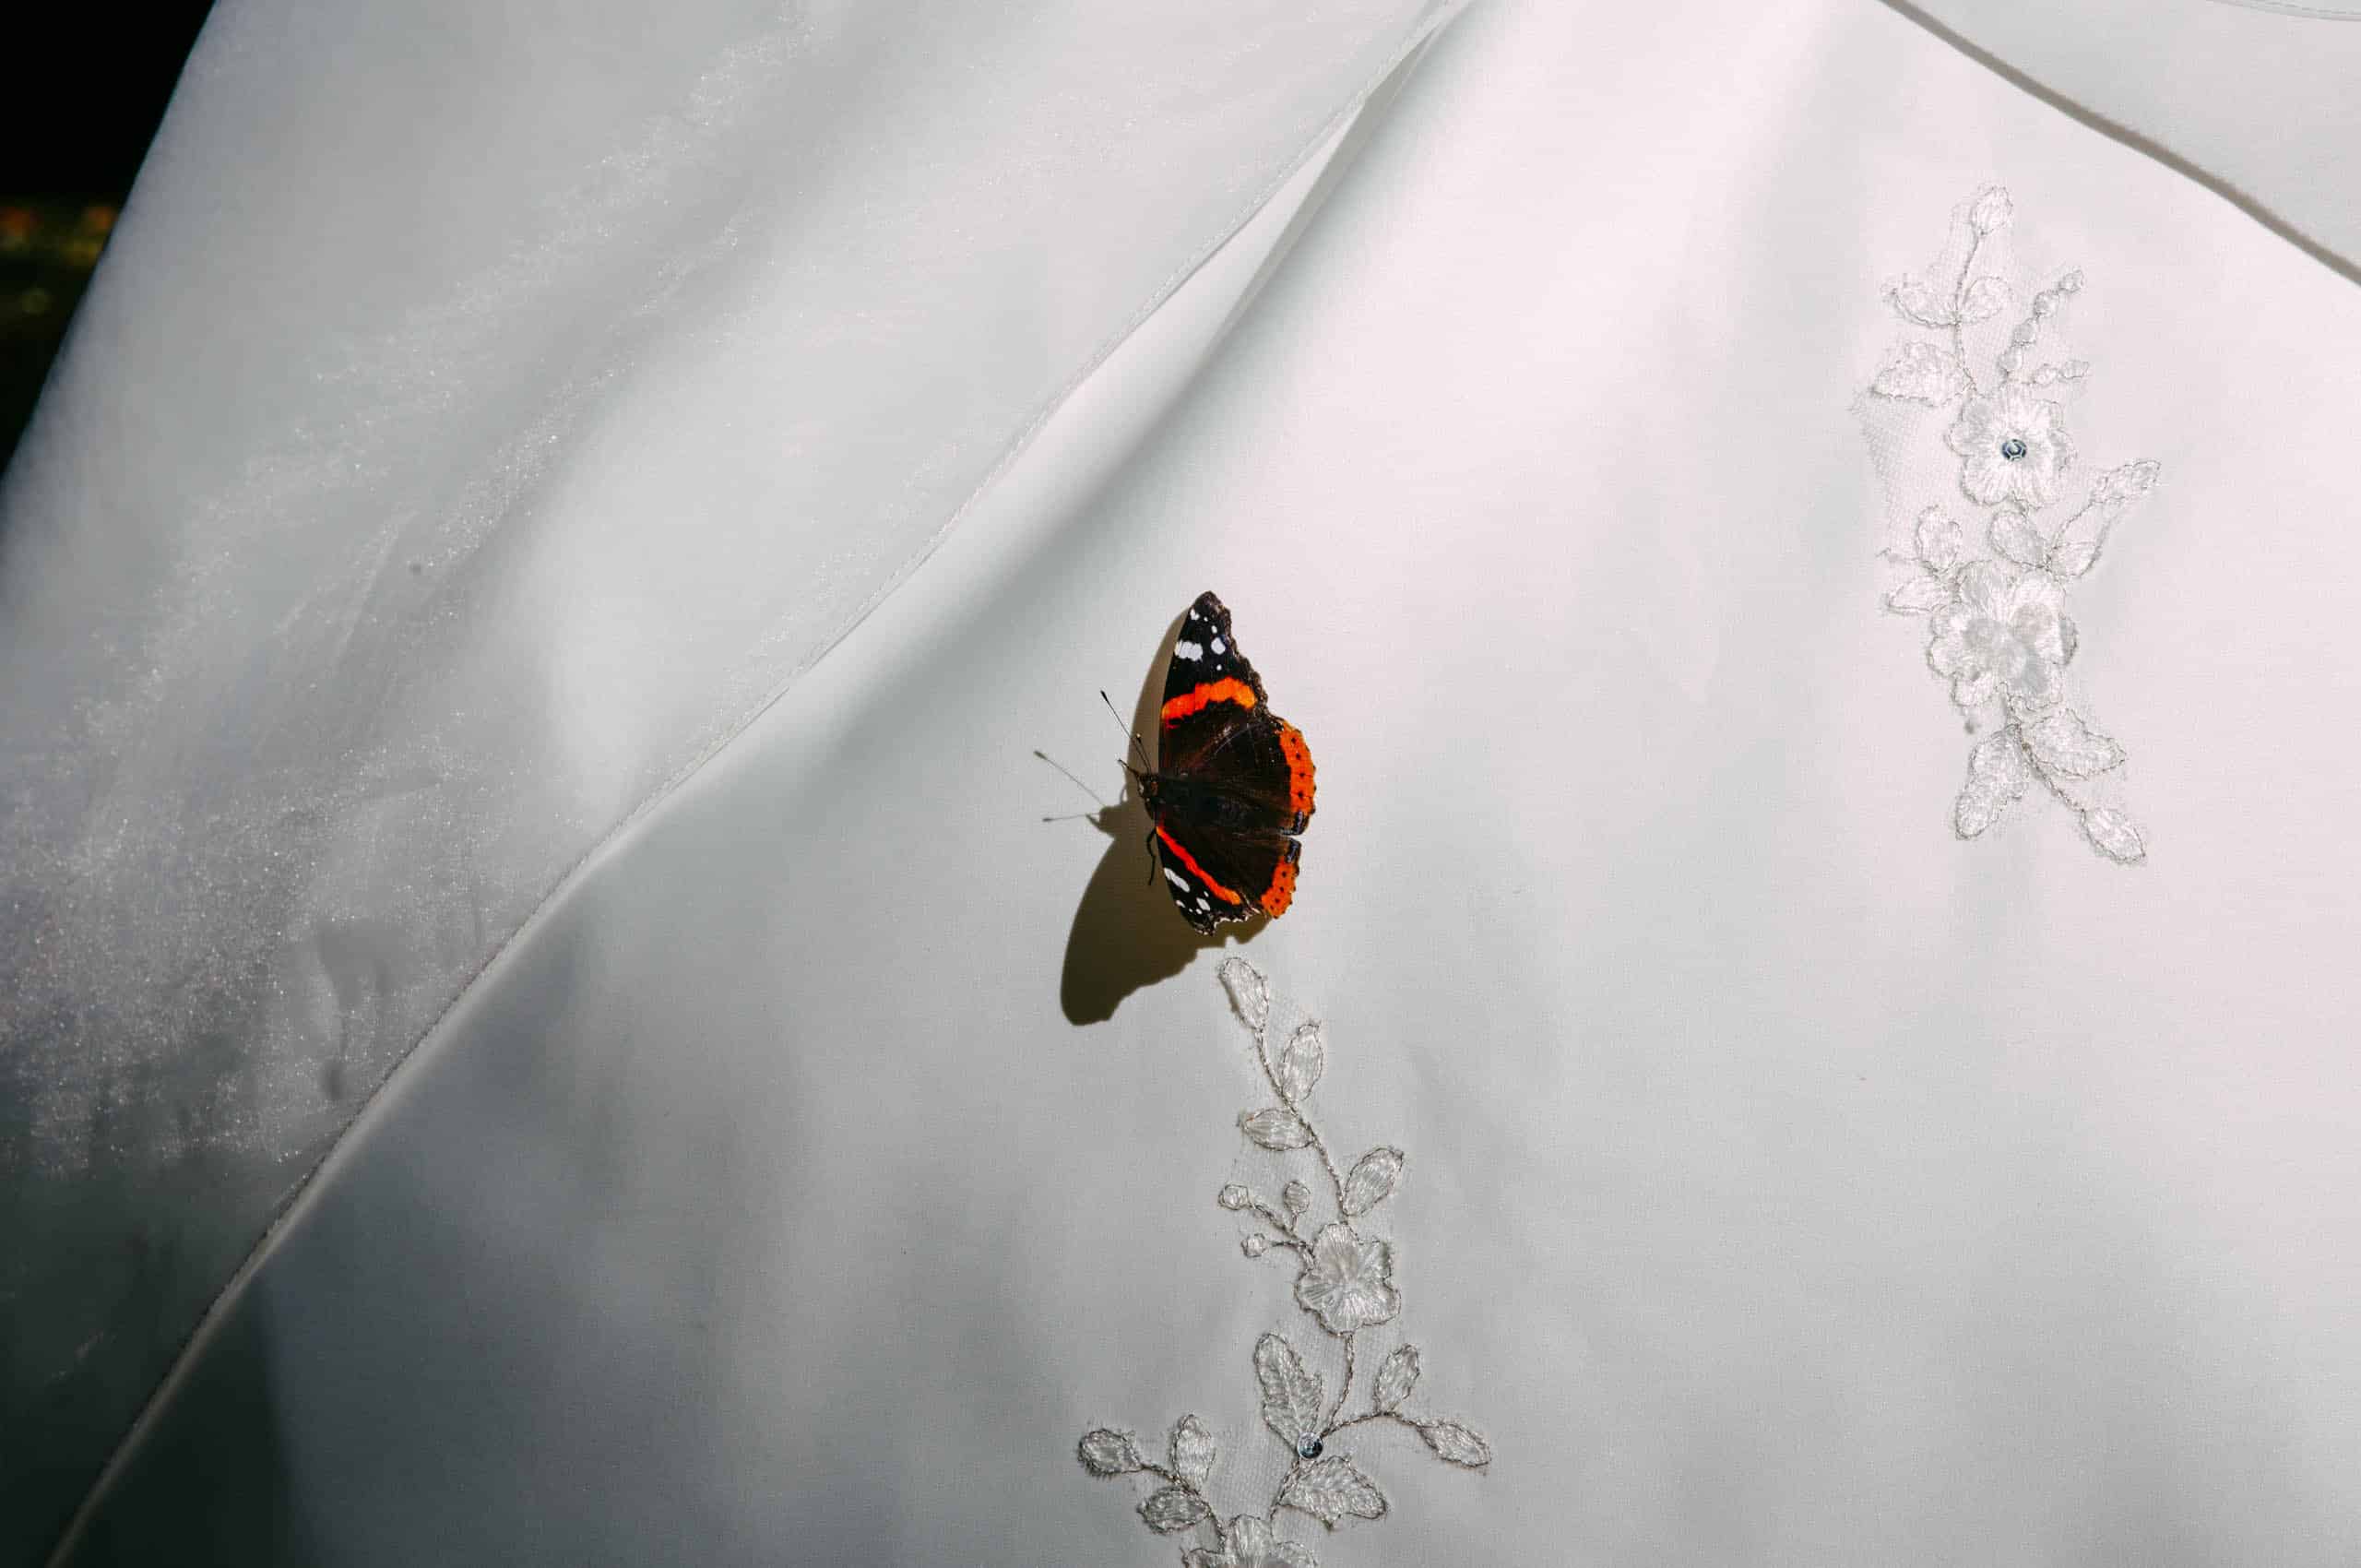 Tijdens een dierenbruiloft strijkt een prachtige vlinder sierlijk neer op een prachtige witte jurk.